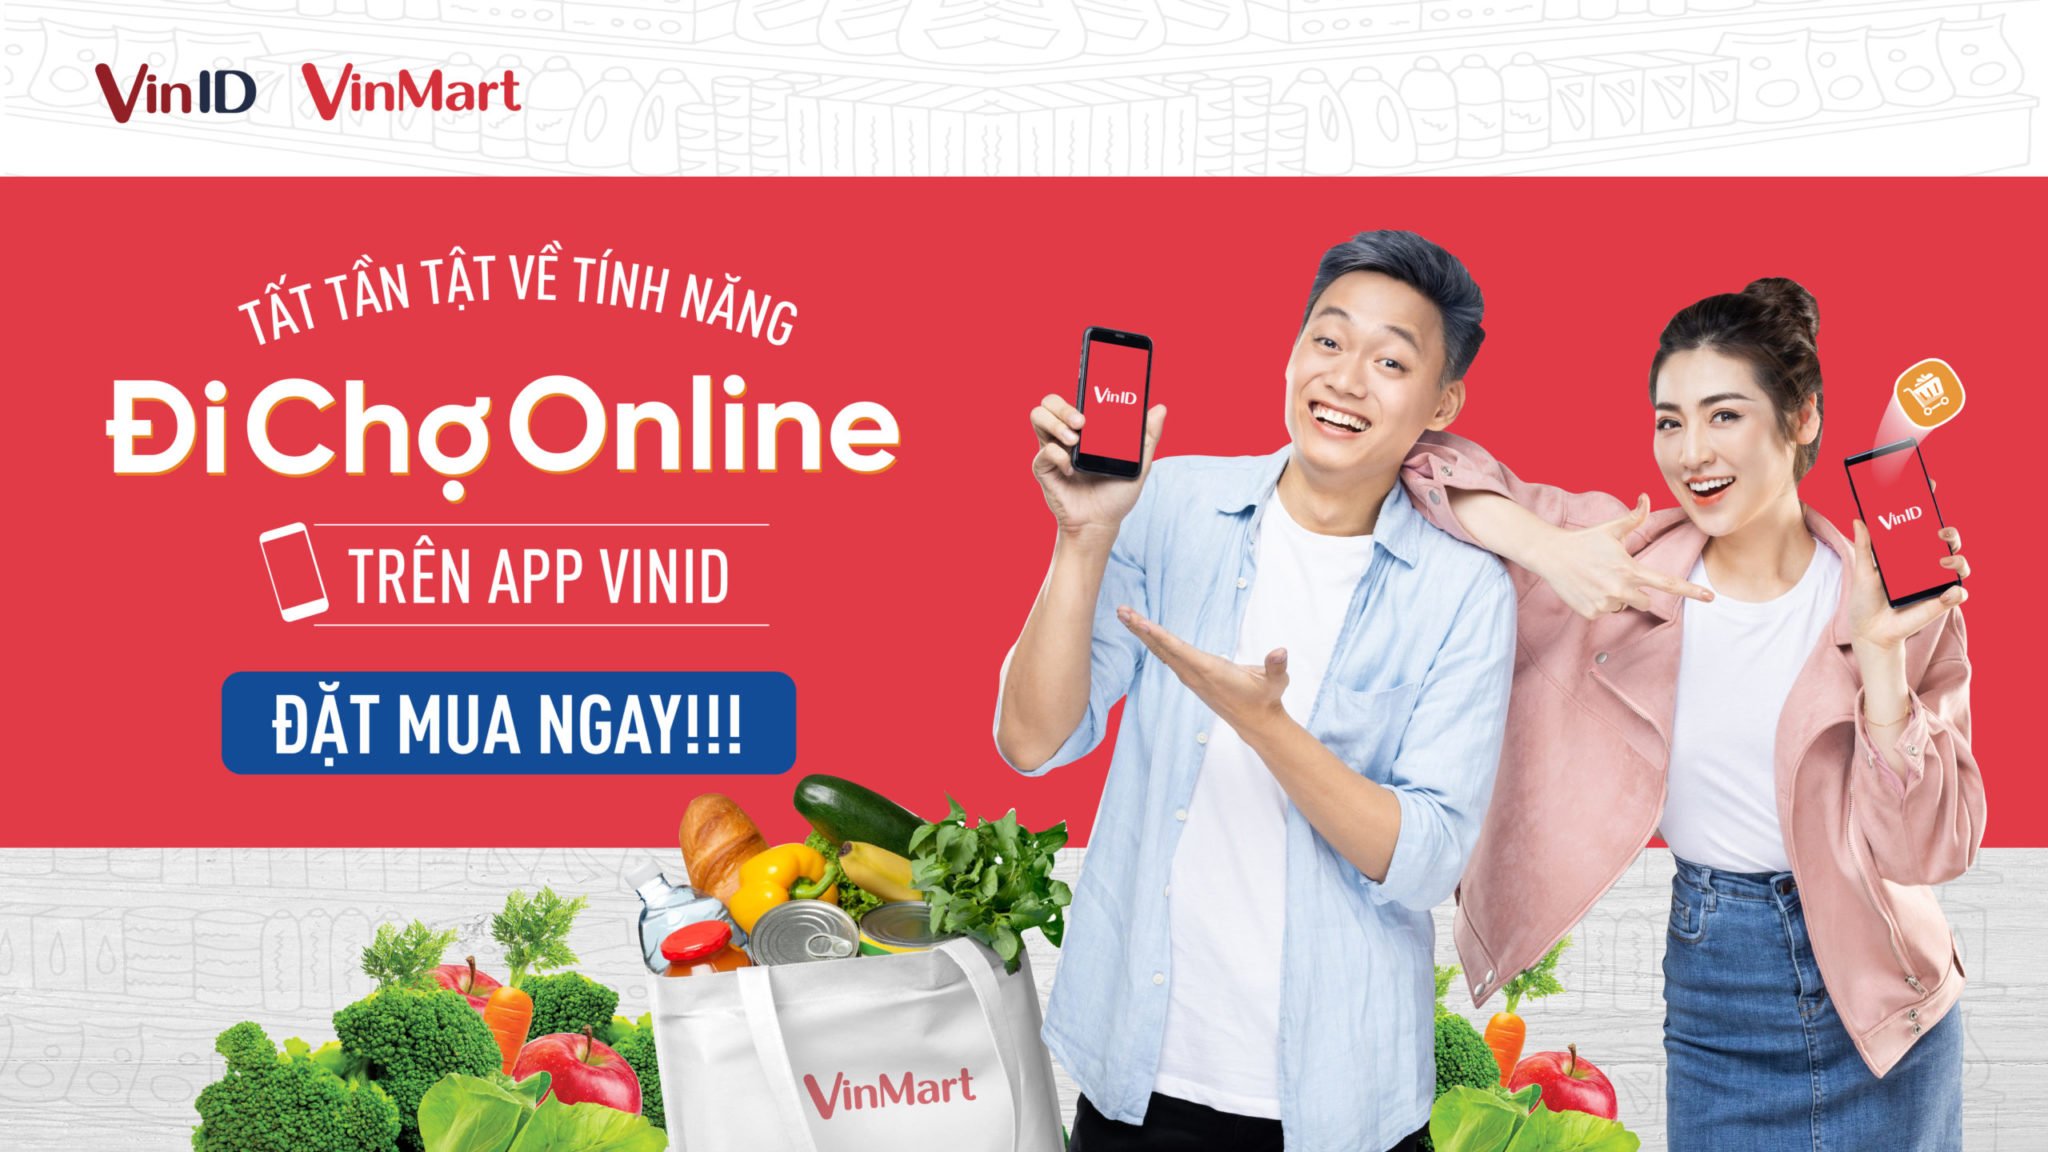 Đi chợ VinMart online có mặt tại Đà Nẵng